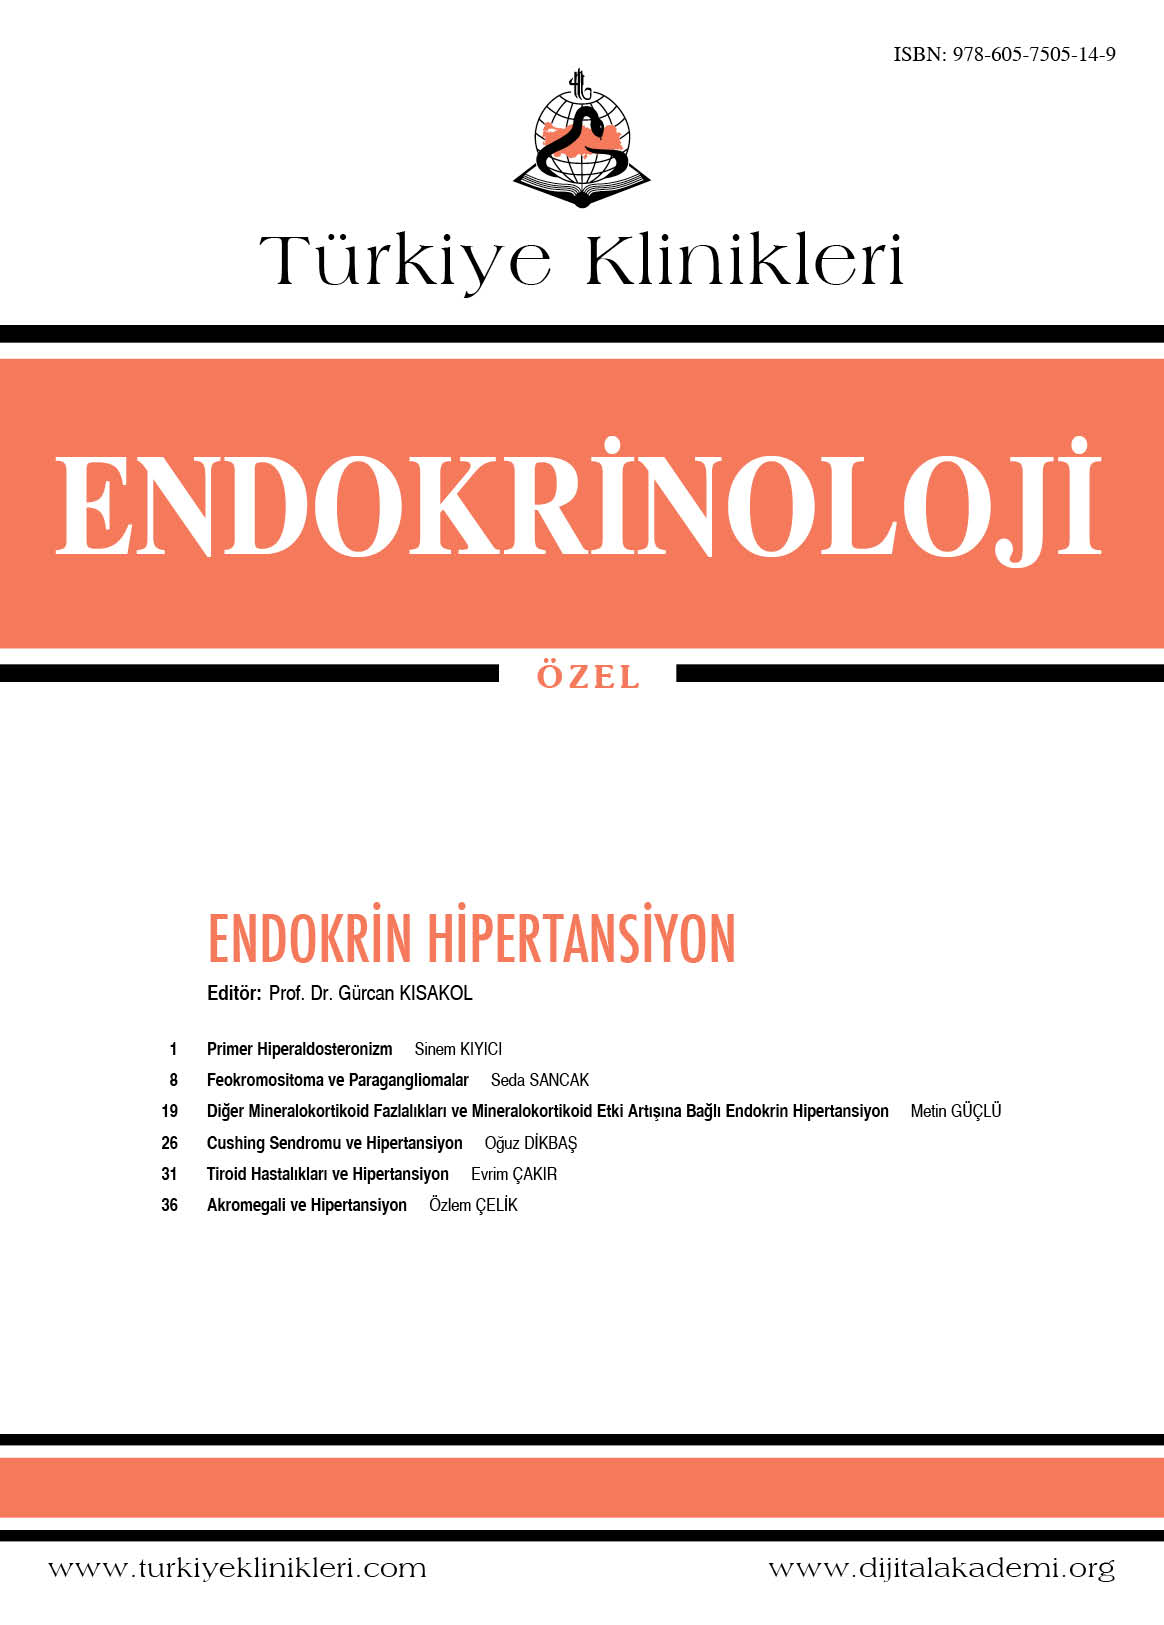 endokrinolojik hipertansiyon